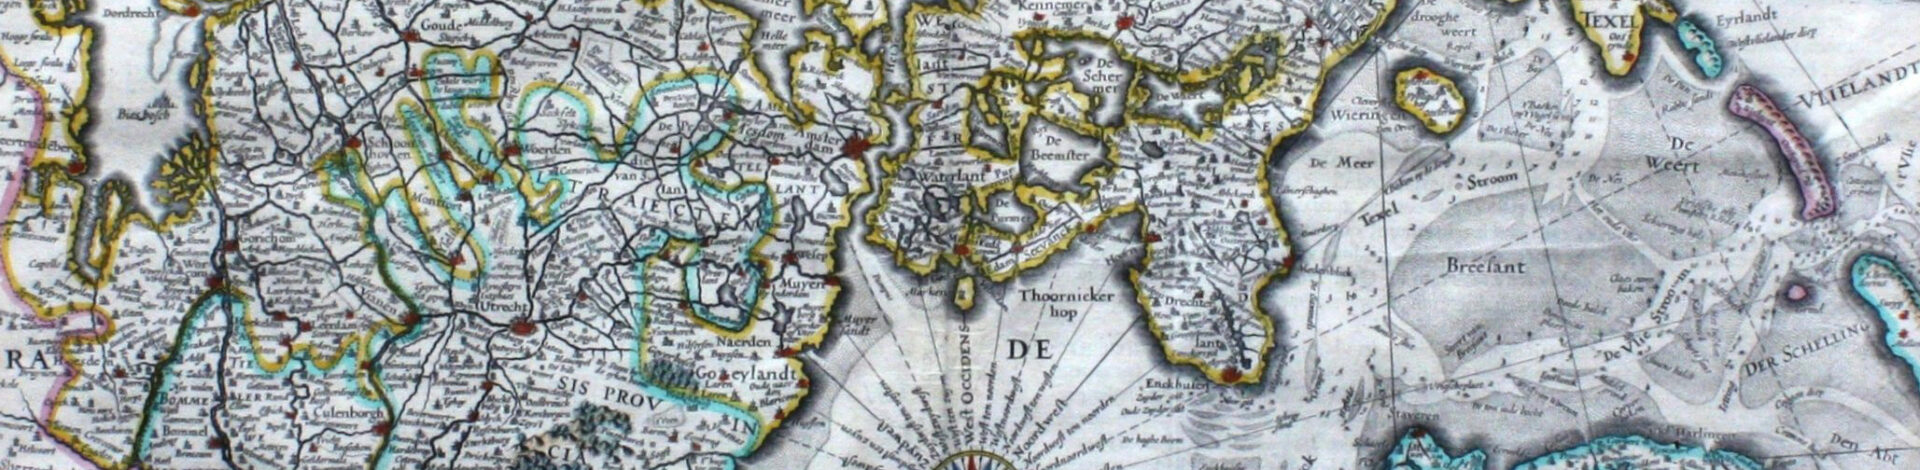 Gemeente Zutphen ontvangt unieke kaartencollectie De Zeeuw